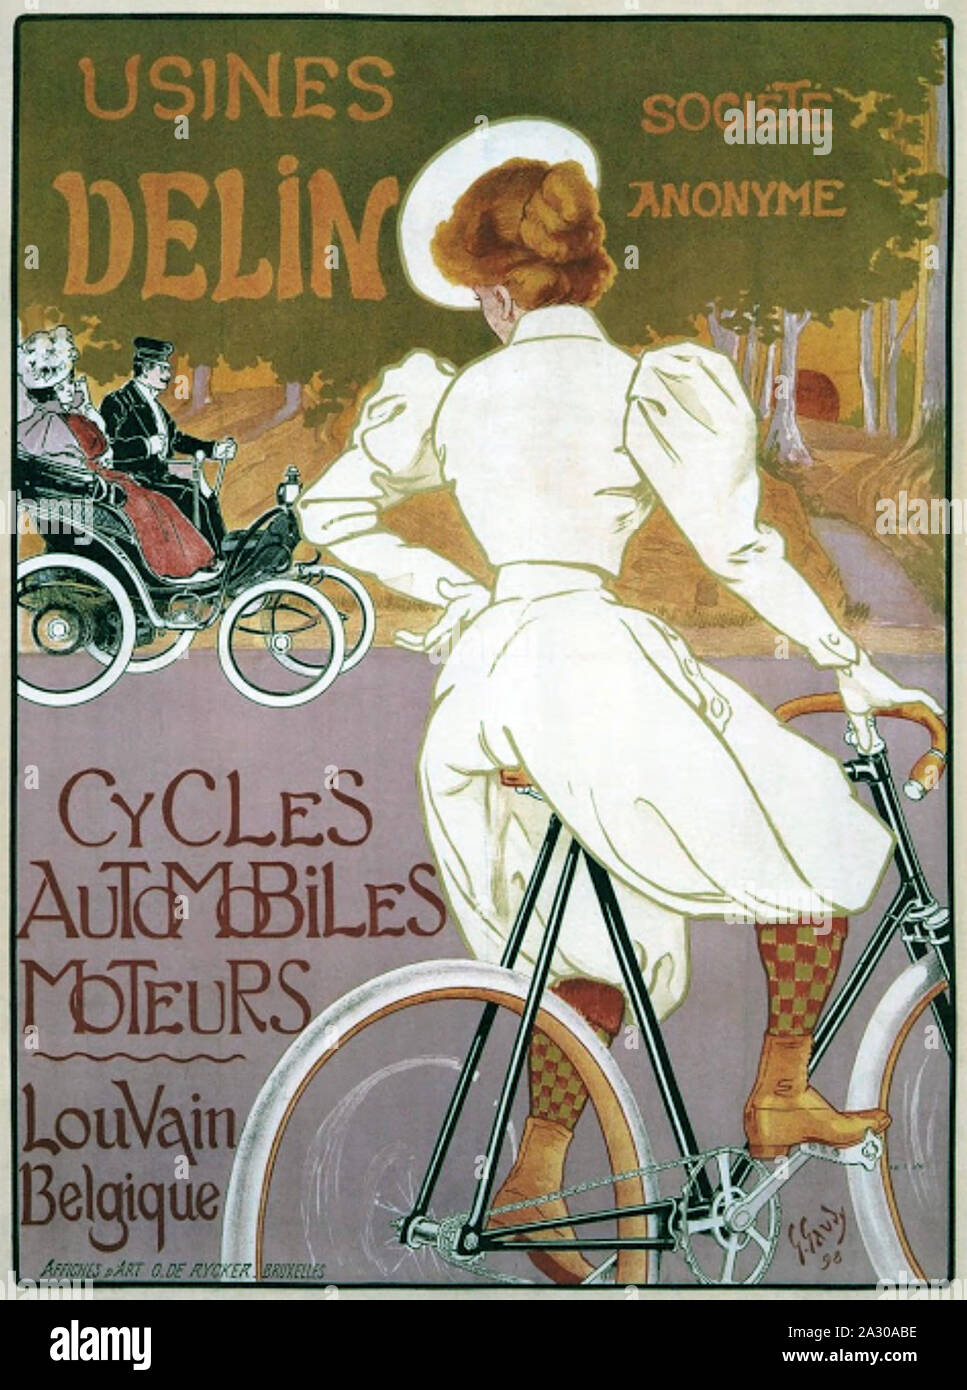 USINES DELIN Eine 1898 Plakat des belgischen Künstlers George Gaudy Stockfoto